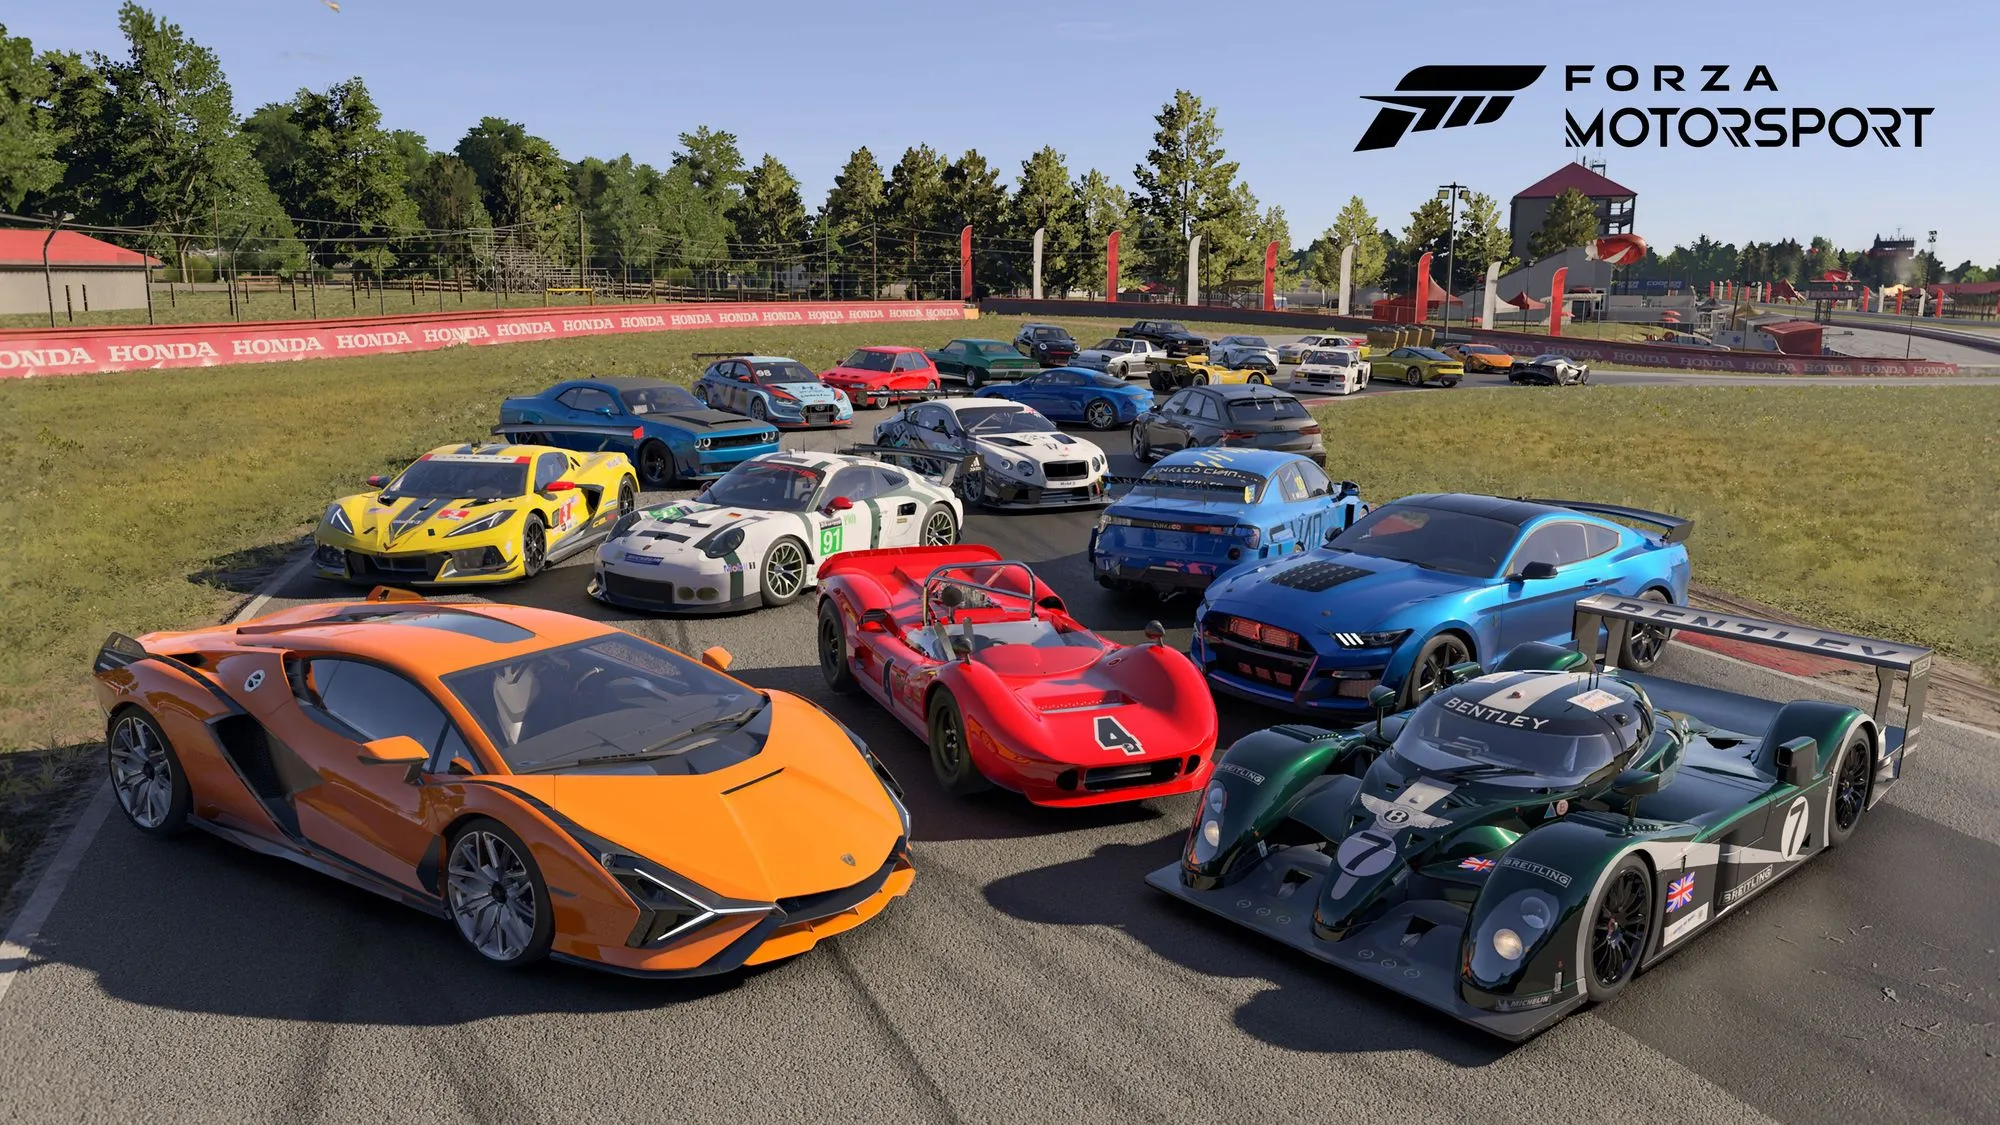 Forza Motorsport - Fehlende Featuers bei Release